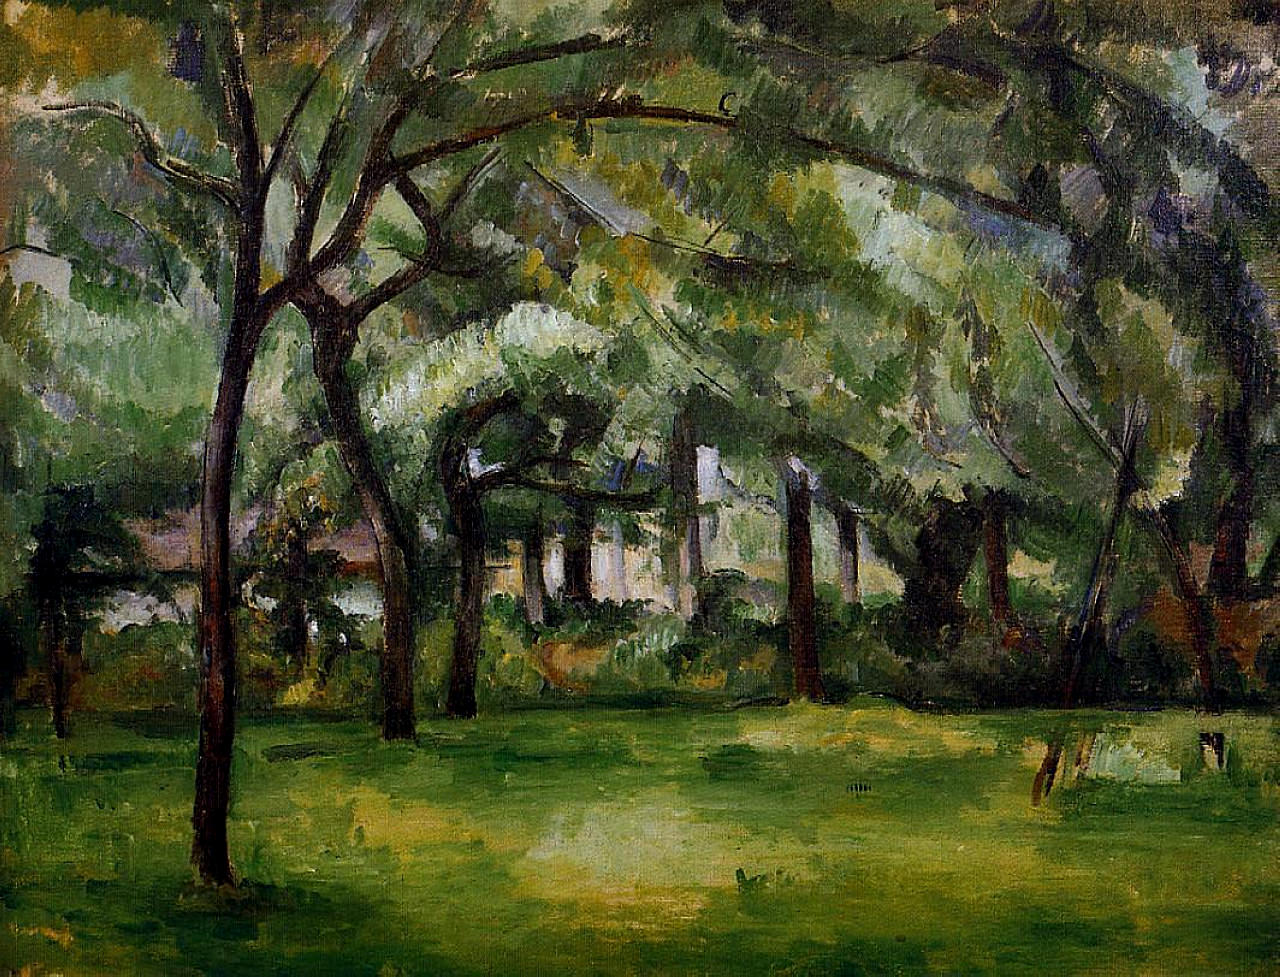 Farm in Normandy,Summer, Paul Cezanne,1882.jpg